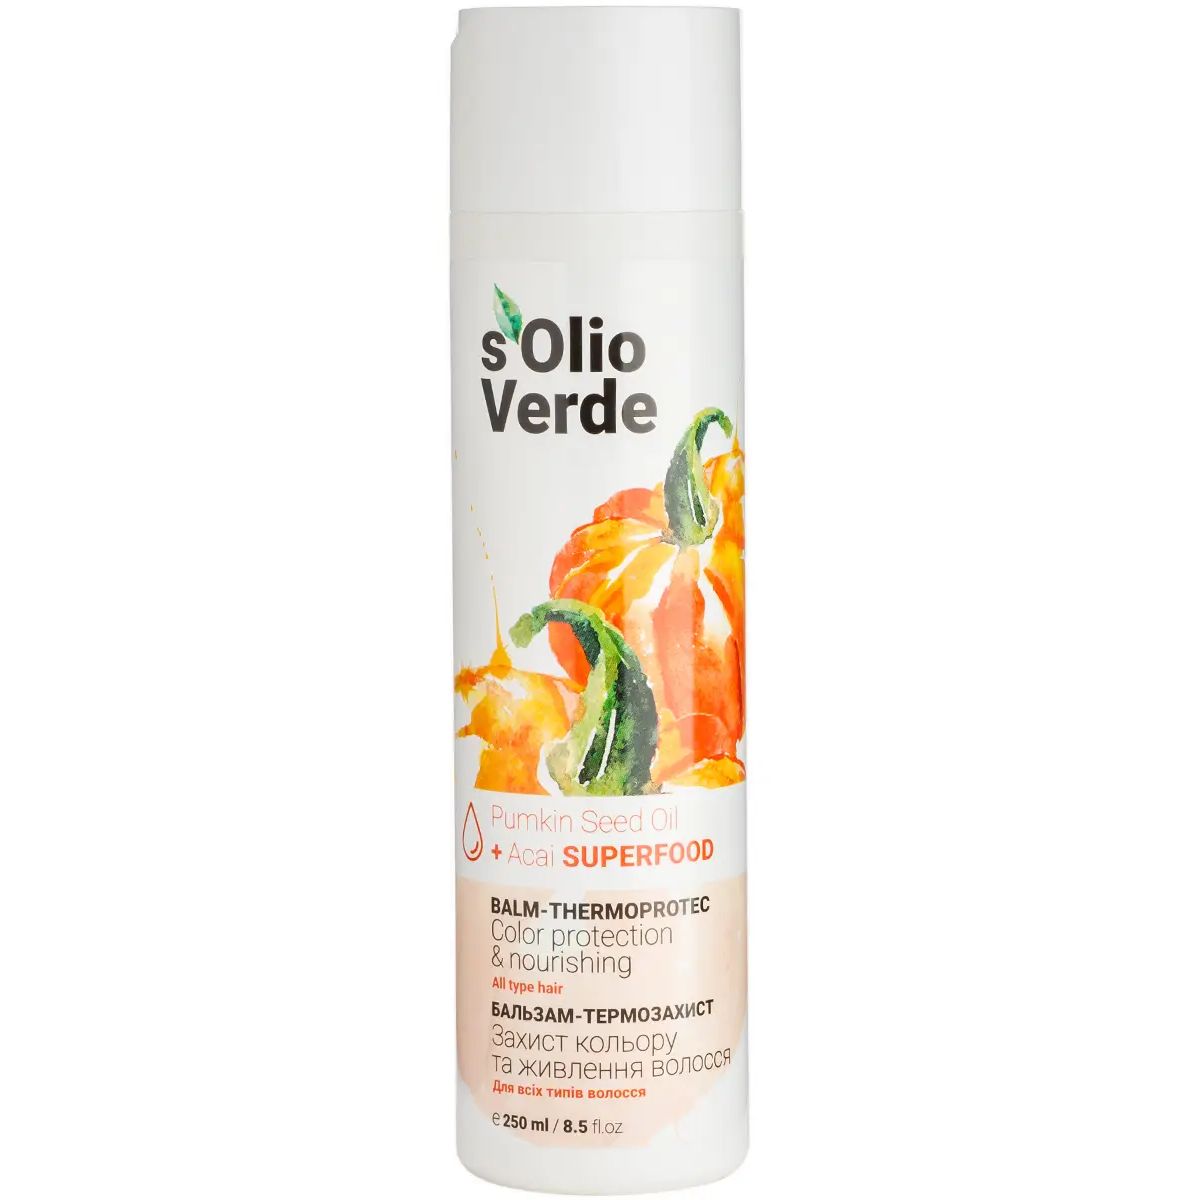 Бальзам-термозащита S'olio Verde Pumpkin Seed Oil для всех типов волос 250 мл - фото 1